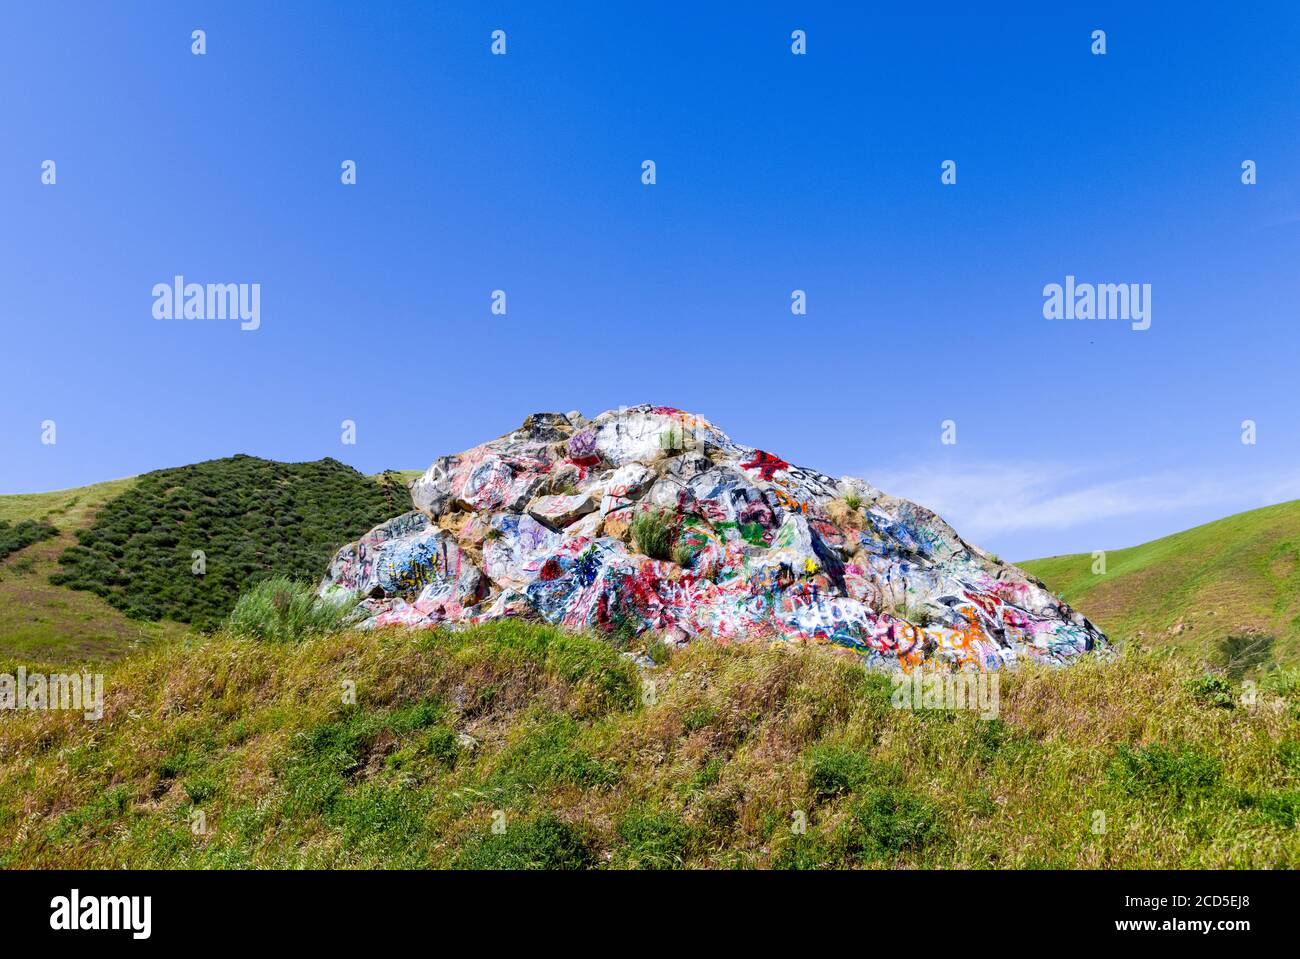 Landschaft mit Felsformation mit Graffiti und sanften Hügeln vandalisiert Stockfoto